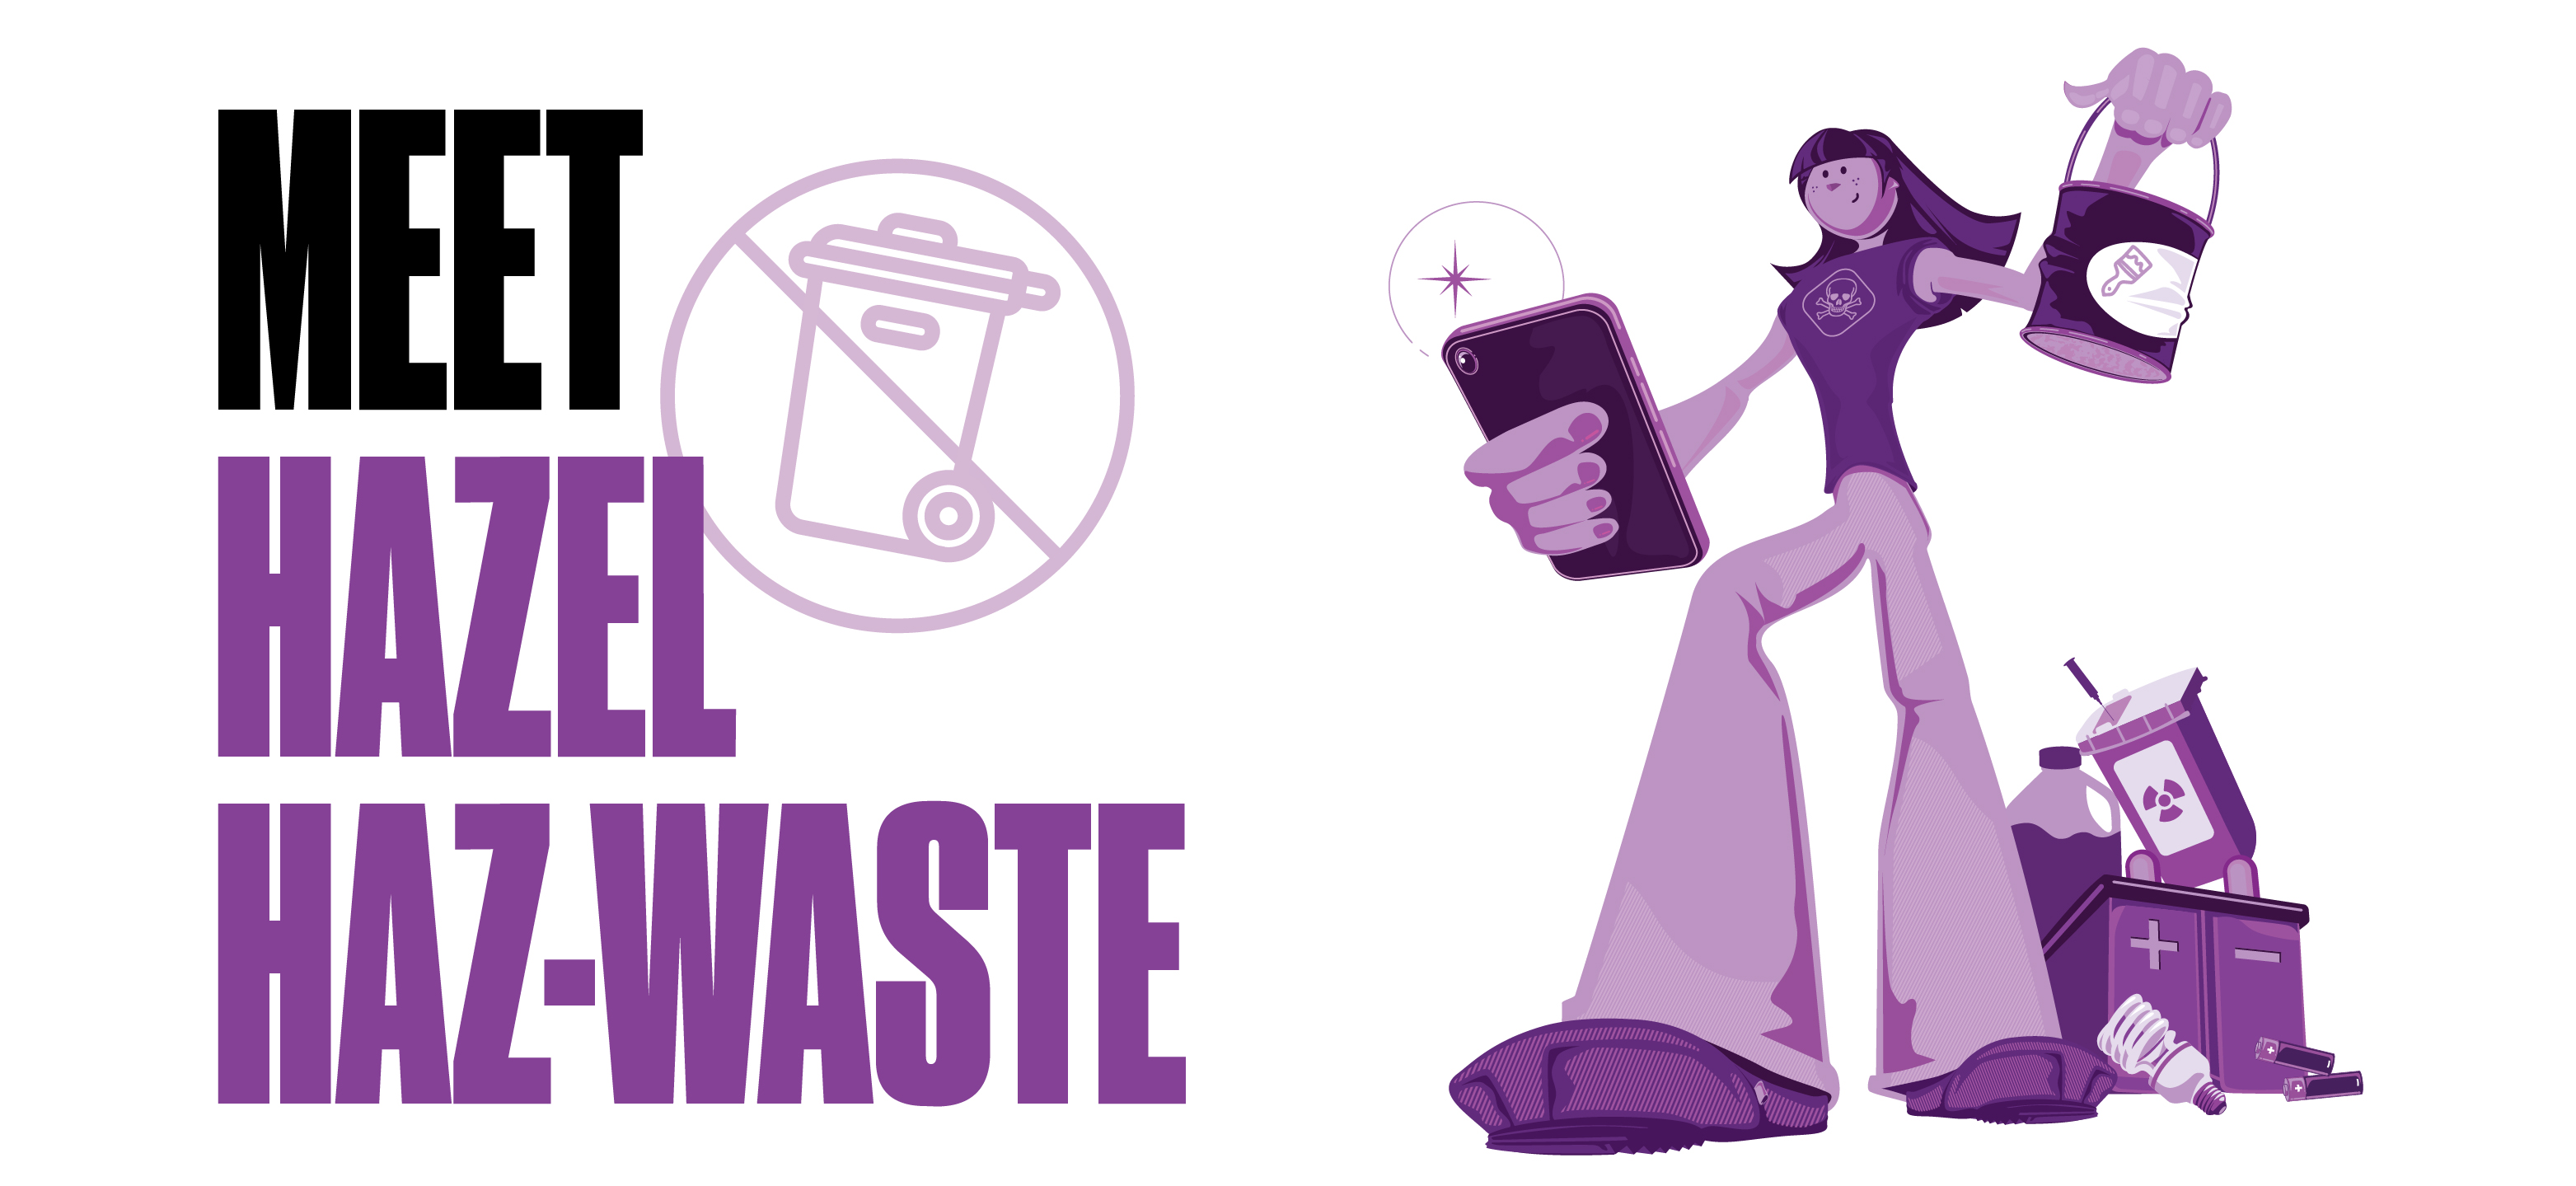 Free Household Hazardous Waste Drop-Off